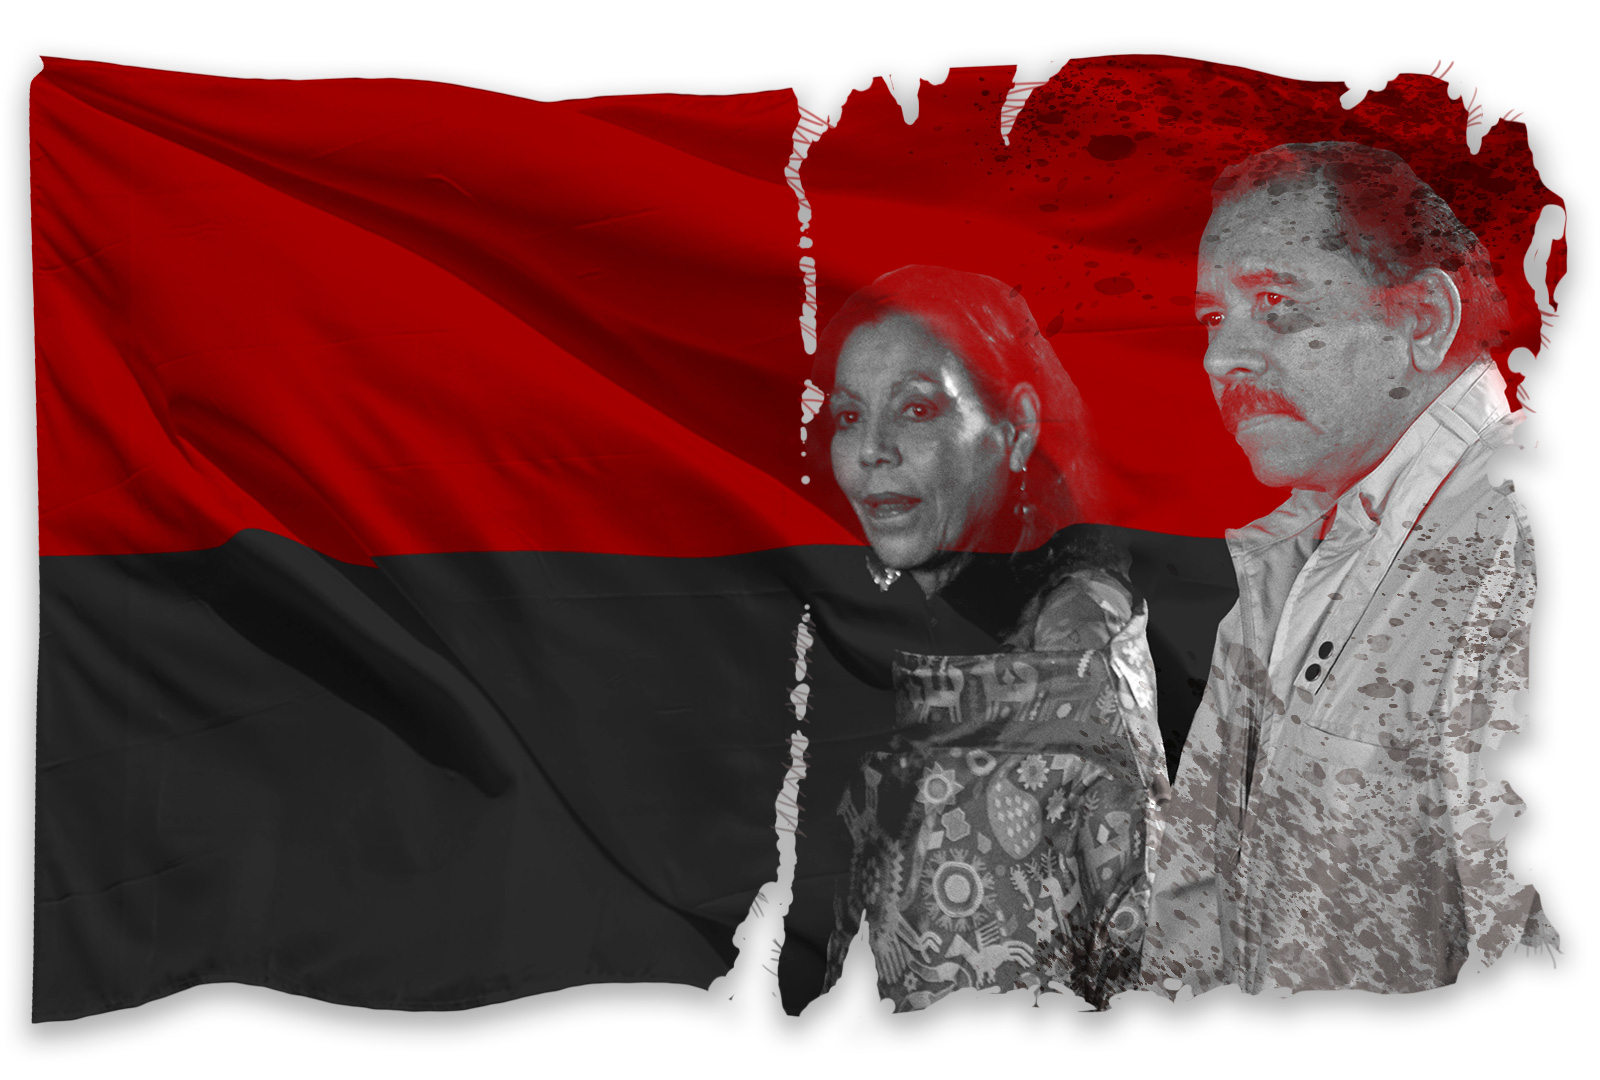 Daniel Ortega y Rosario Murillo